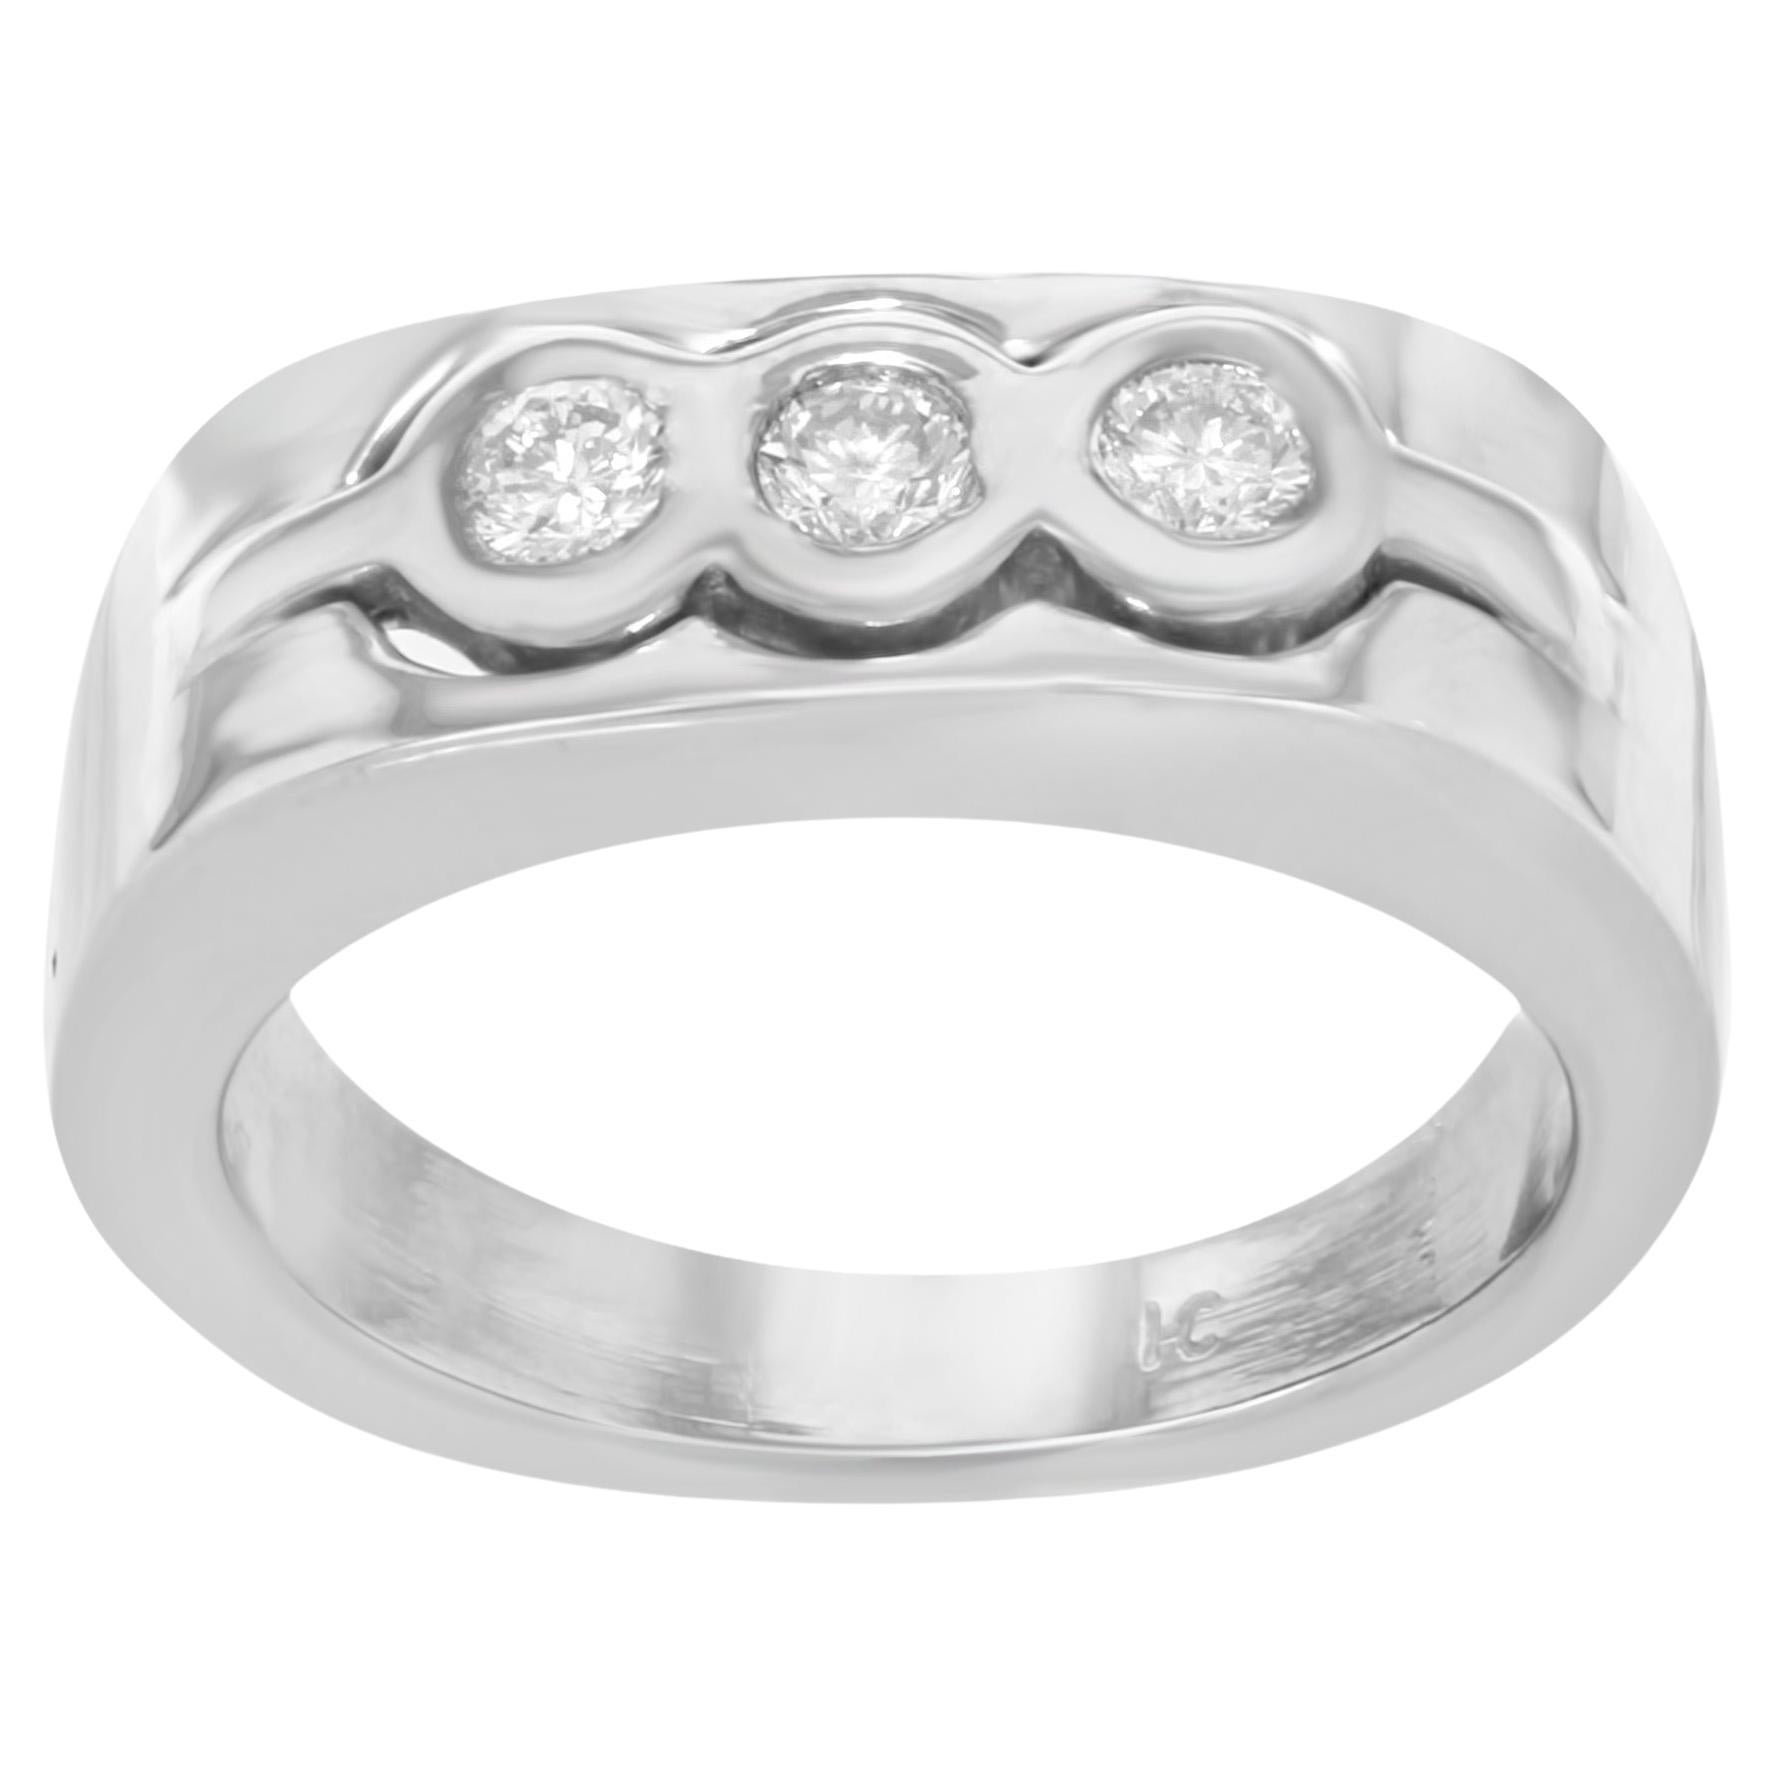 Rachel Koen Diamond Ring Band 14k White Gold 0.40Cttw For Sale